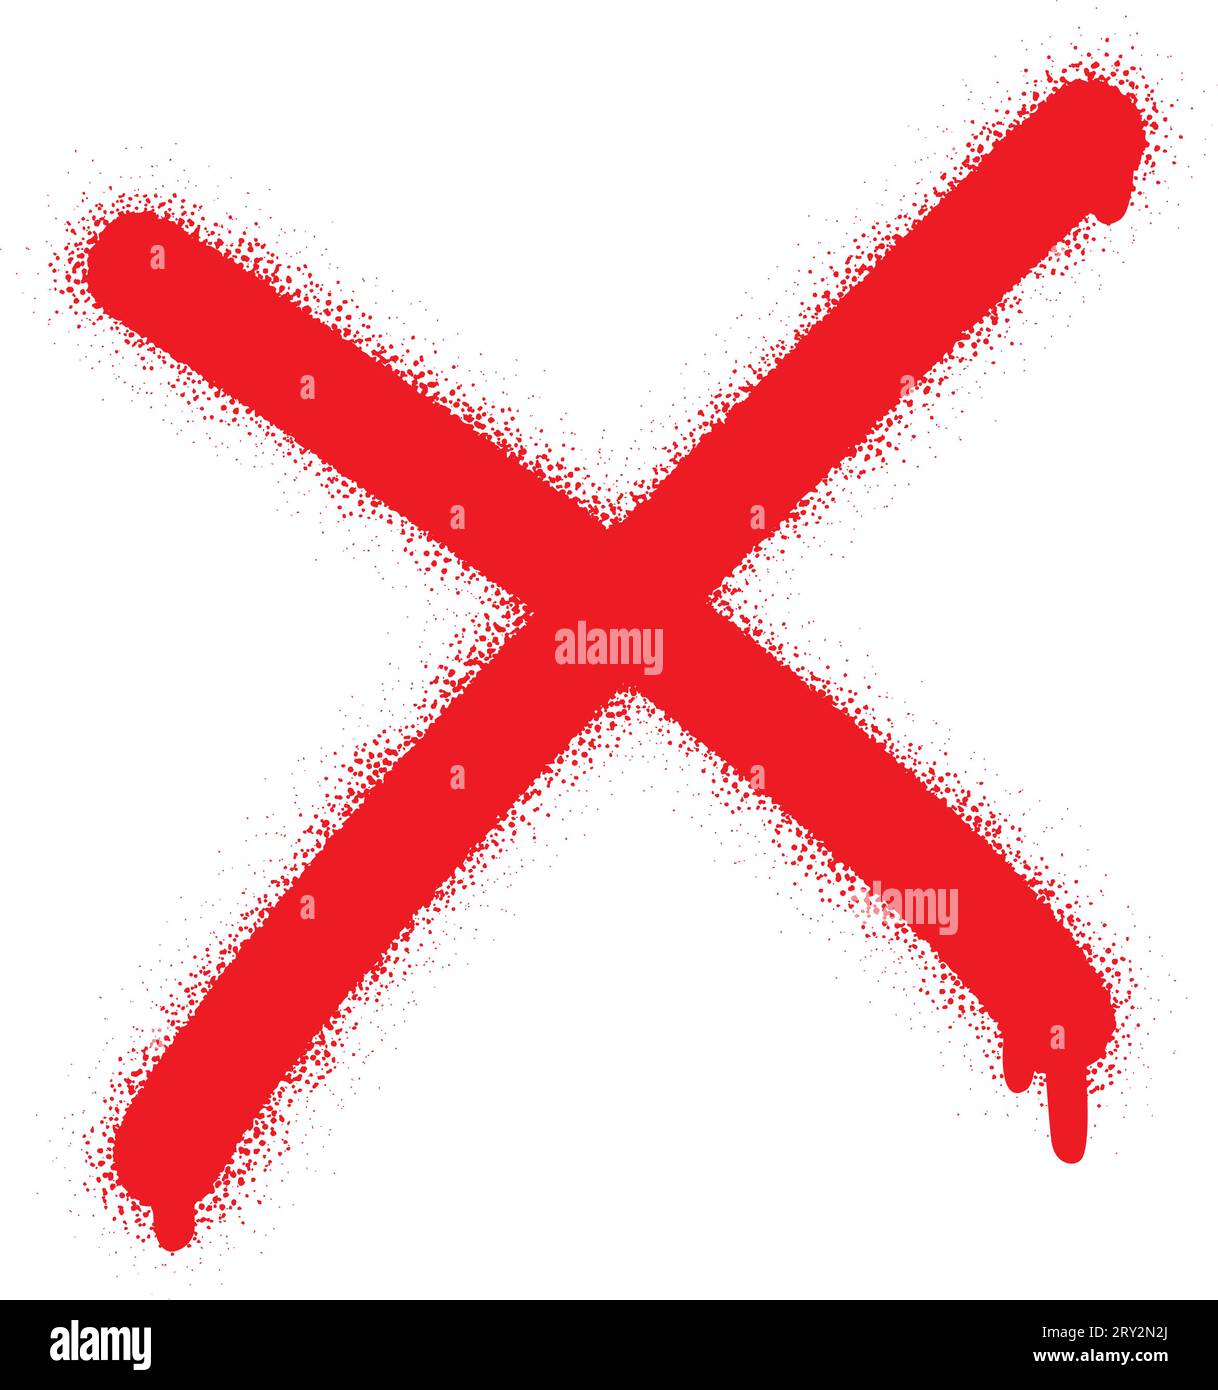 Isoliertes rotes Spraygraffiti-Zeichen (mit Bedeutung: NEIN, FALSCH, VERBOTEN, ABBRECHEN, UNGÜLTIG, STOPP) auf weißem Hintergrund. Stock Vektor